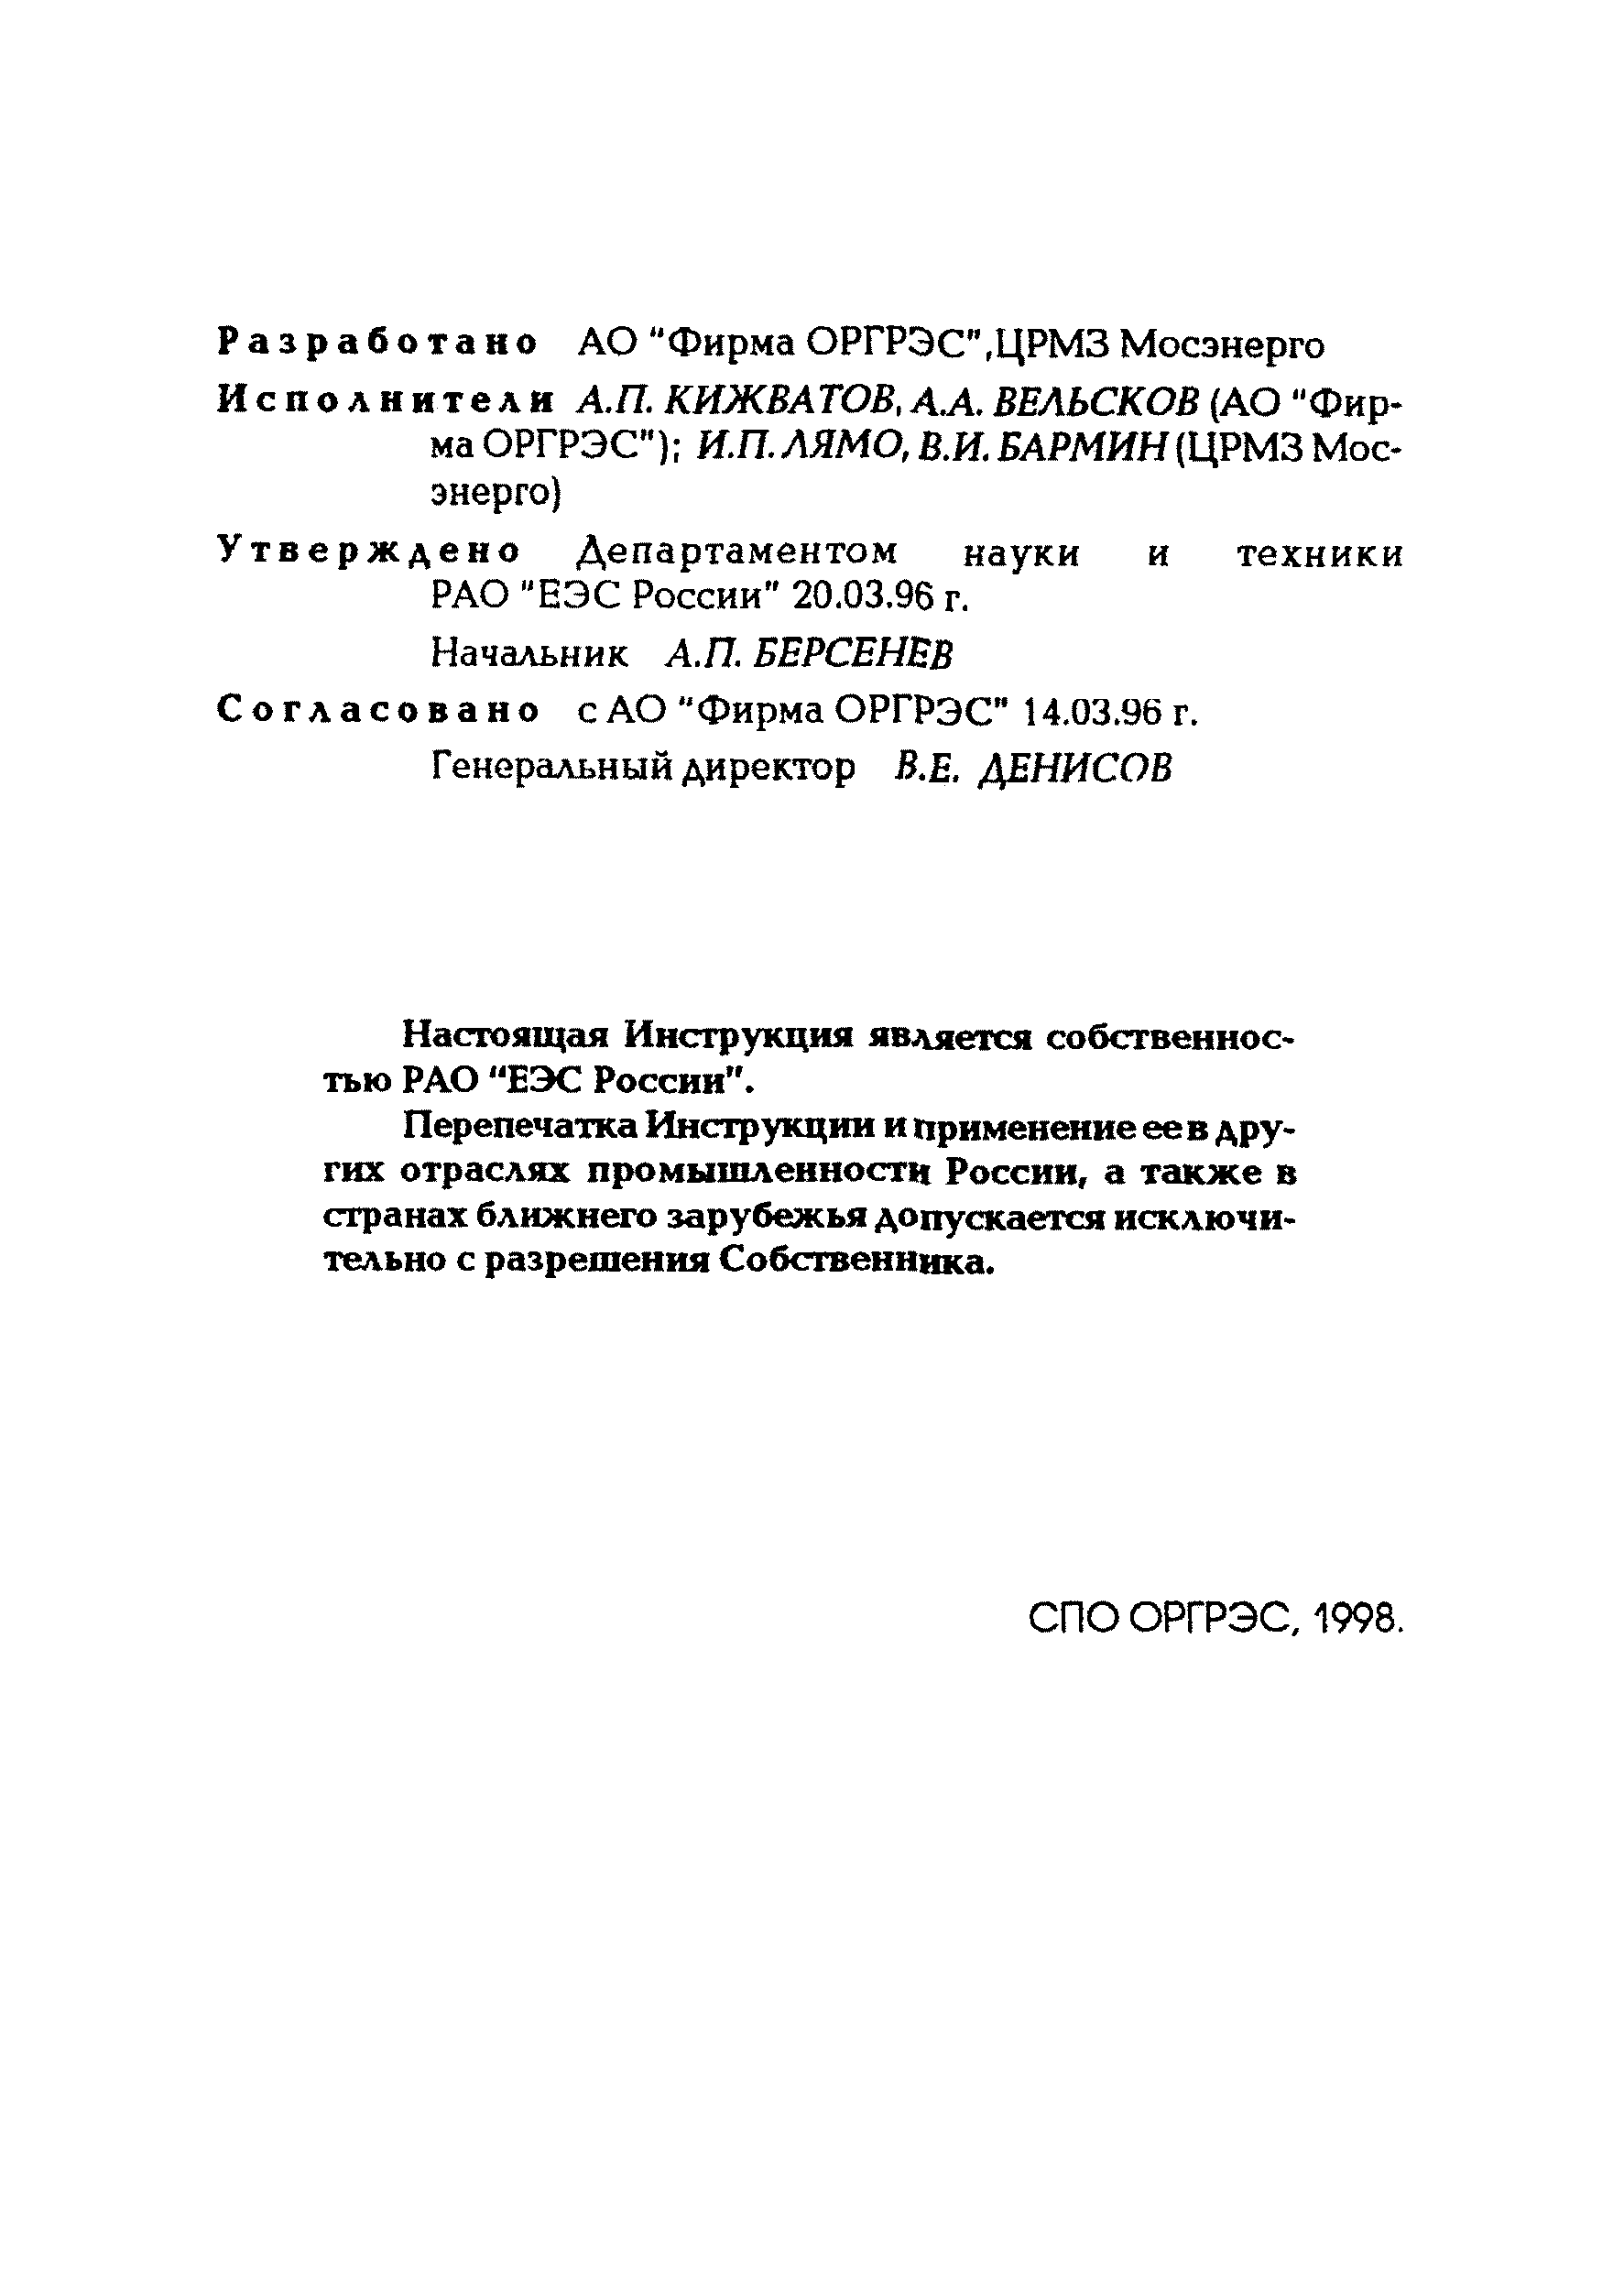 РД 34.17.403-96